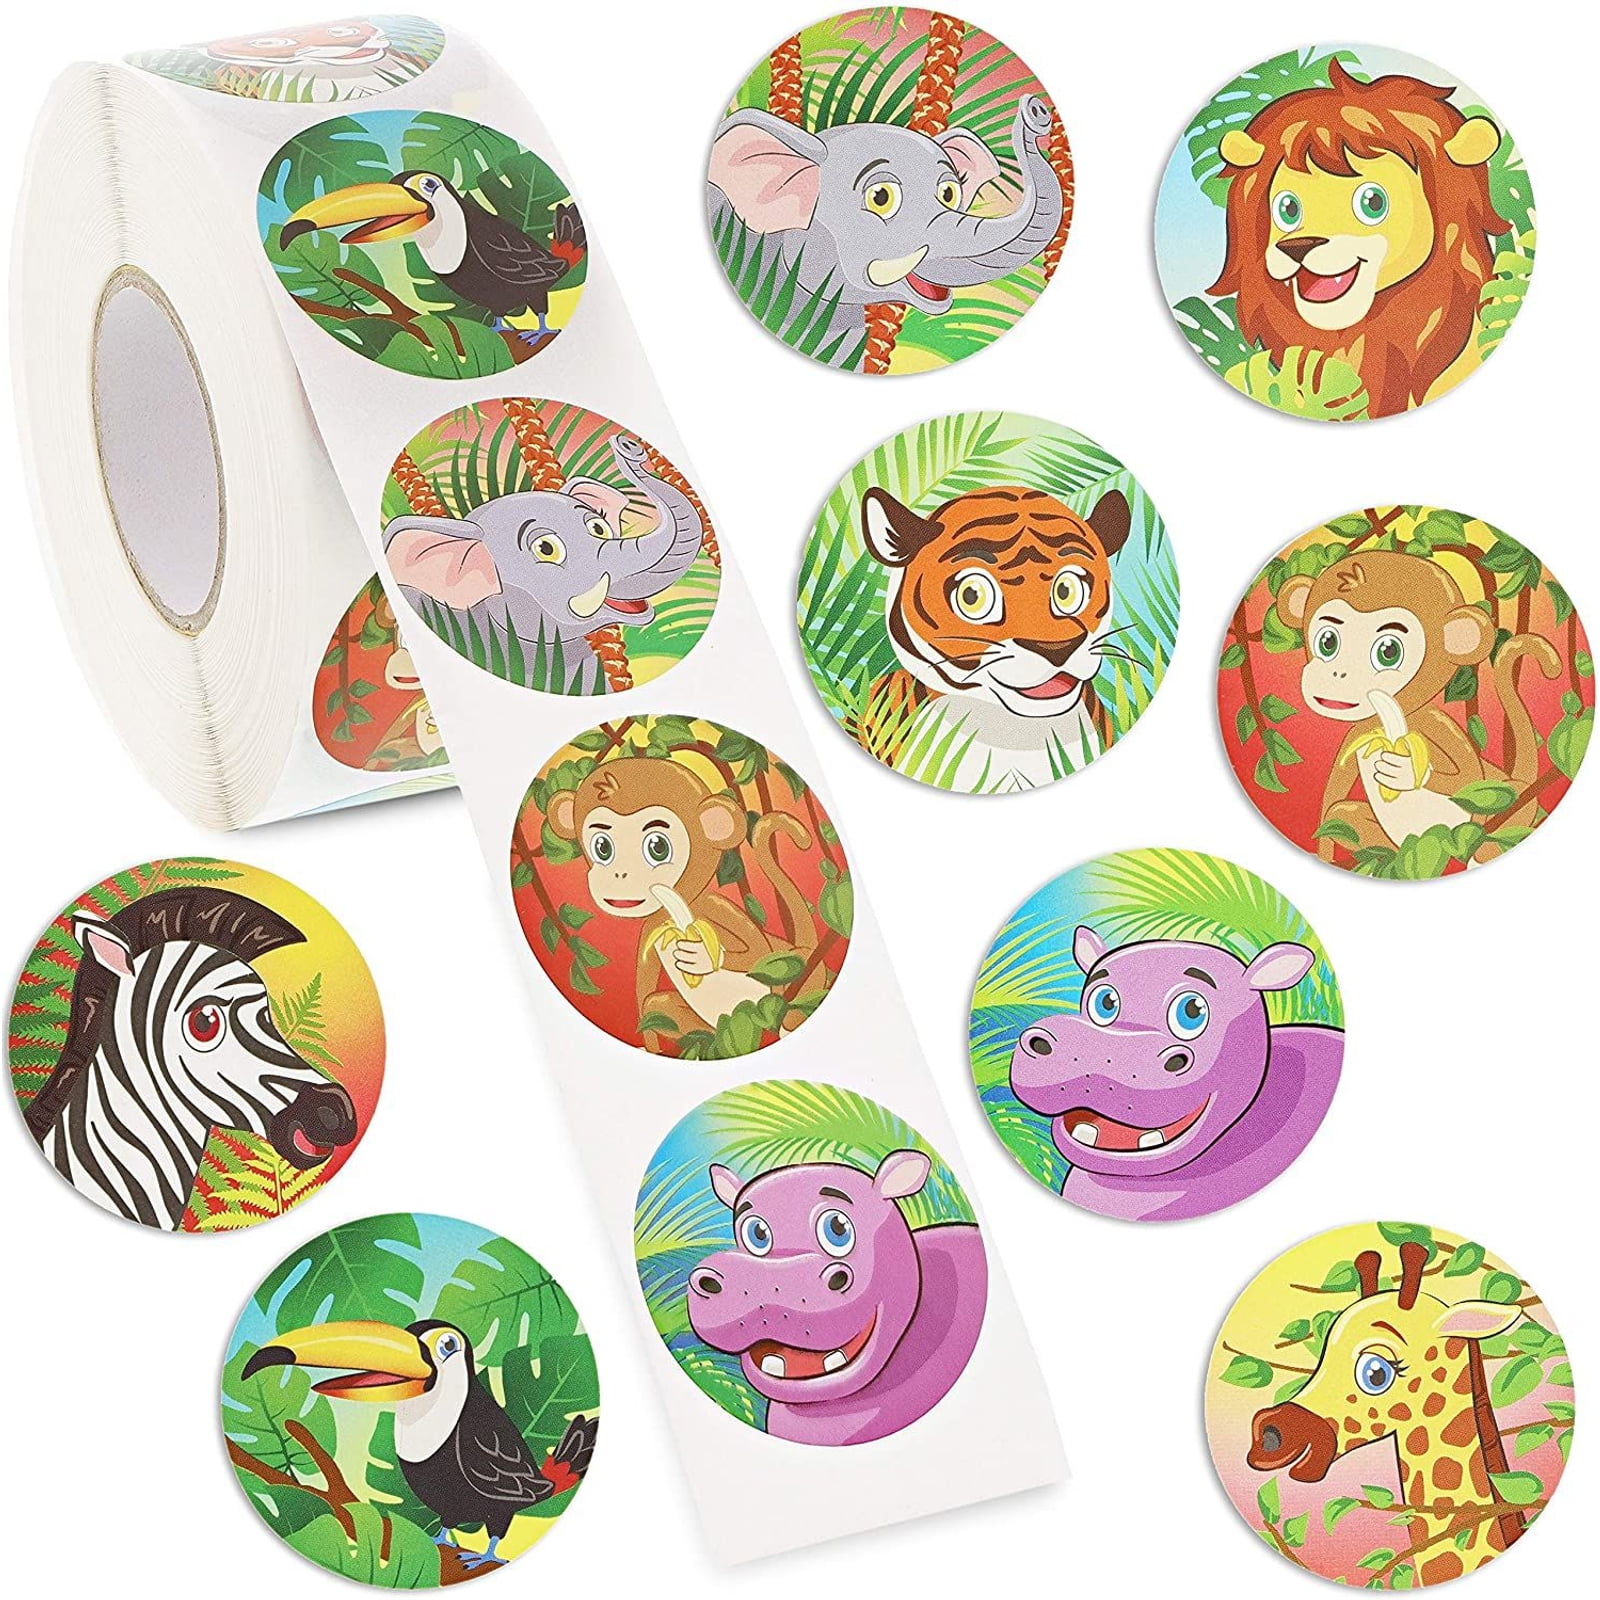 Sticker Organisation Planner Accessories Sticker Storage 4 x 6 inches Mini Sticker Album Giraffe Elephant Panda Bunny Album